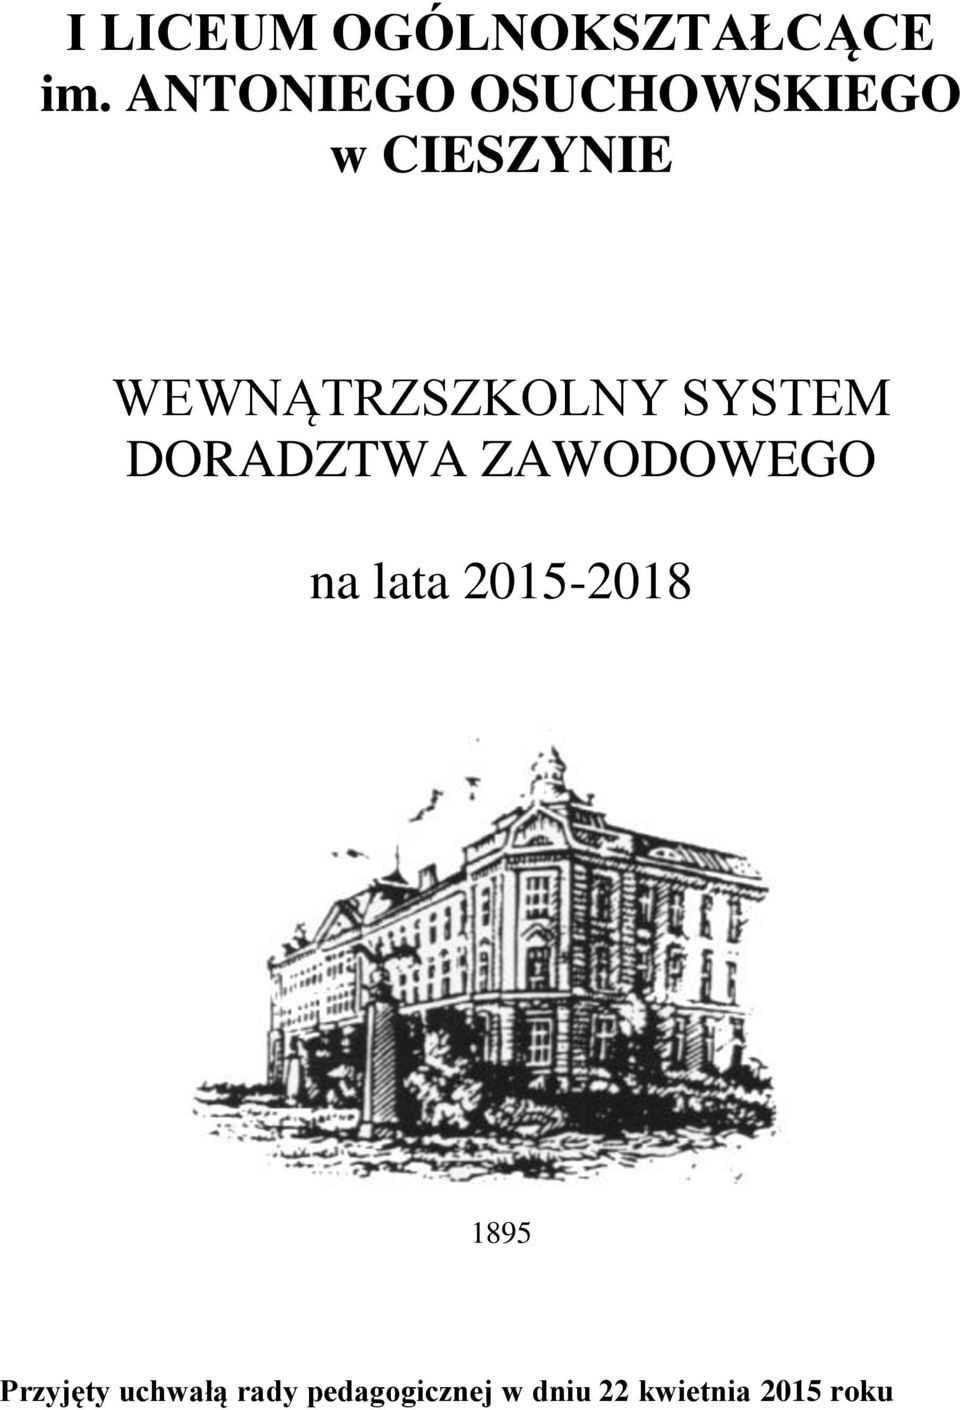 SYSTEM DORADZTWA ZAWODOWEGO na lata 2015-2018